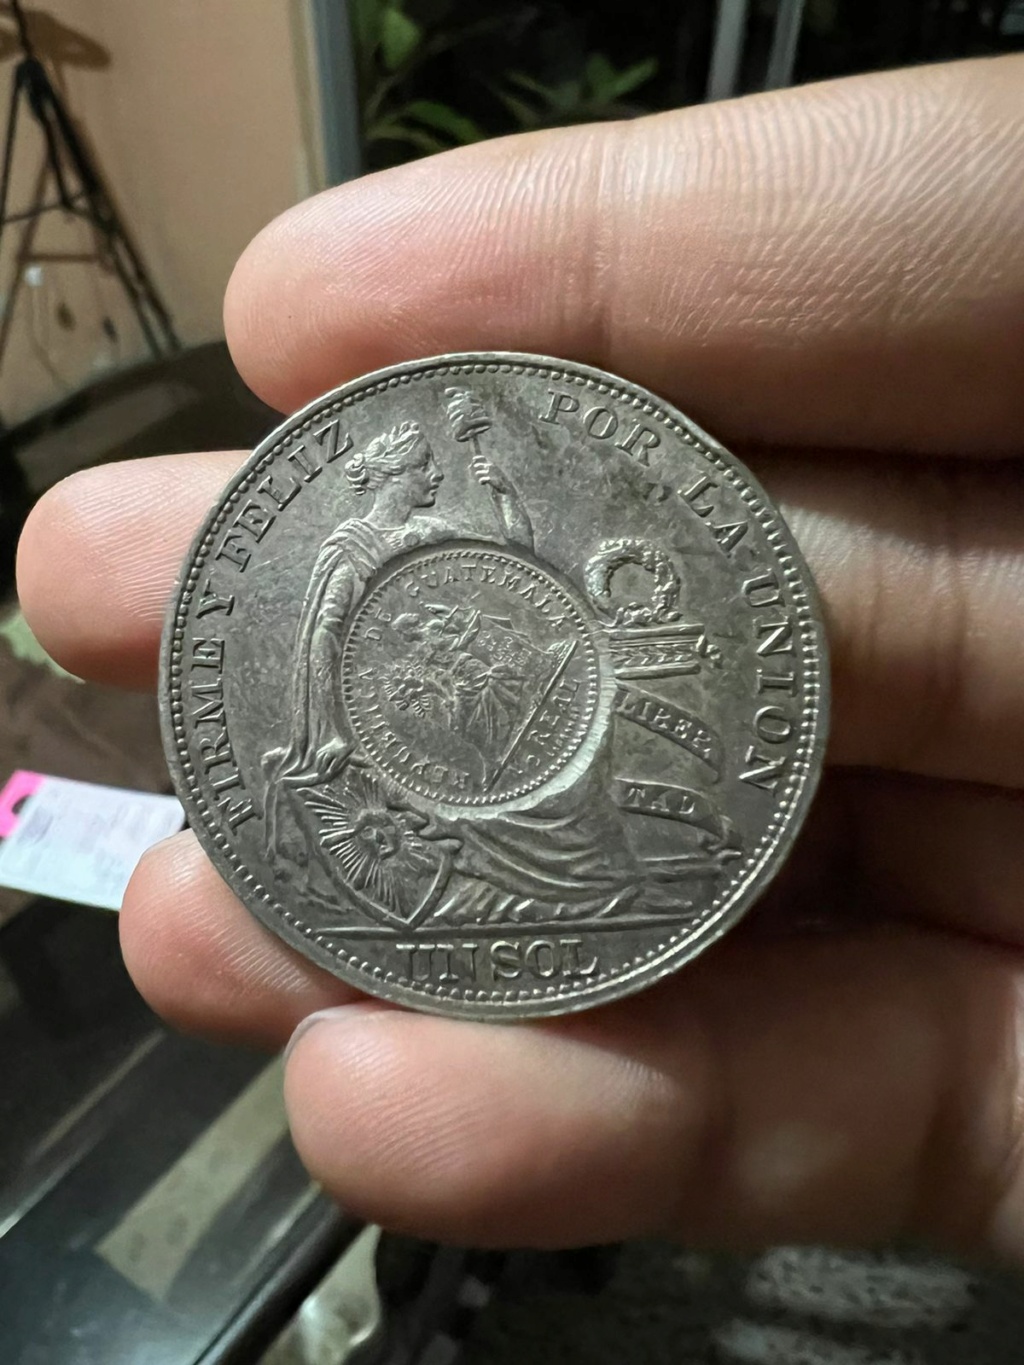 Monedas de 8 reales, pesos y quetzal de Guatemala, desde la Independencia - Página 2 Img-2020